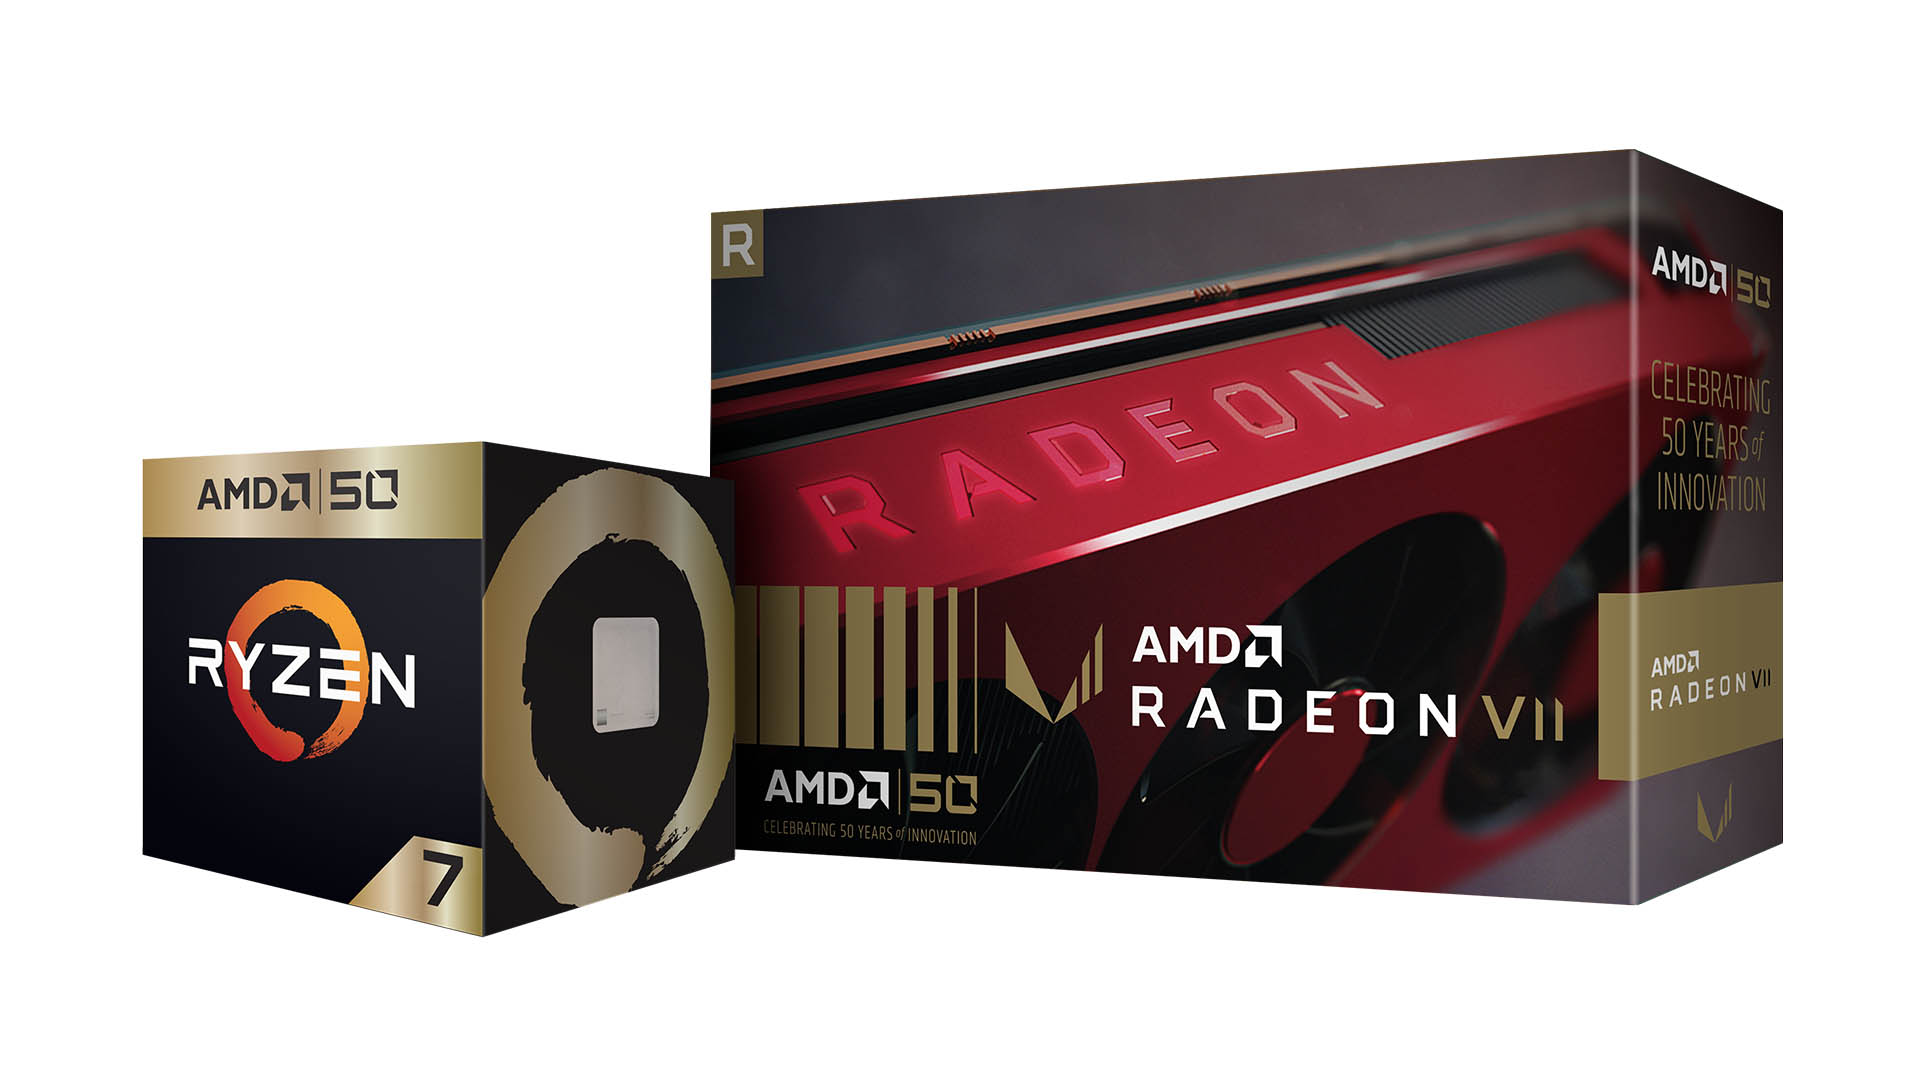 AMD-ovih 50 godina kroz vremensku crtu